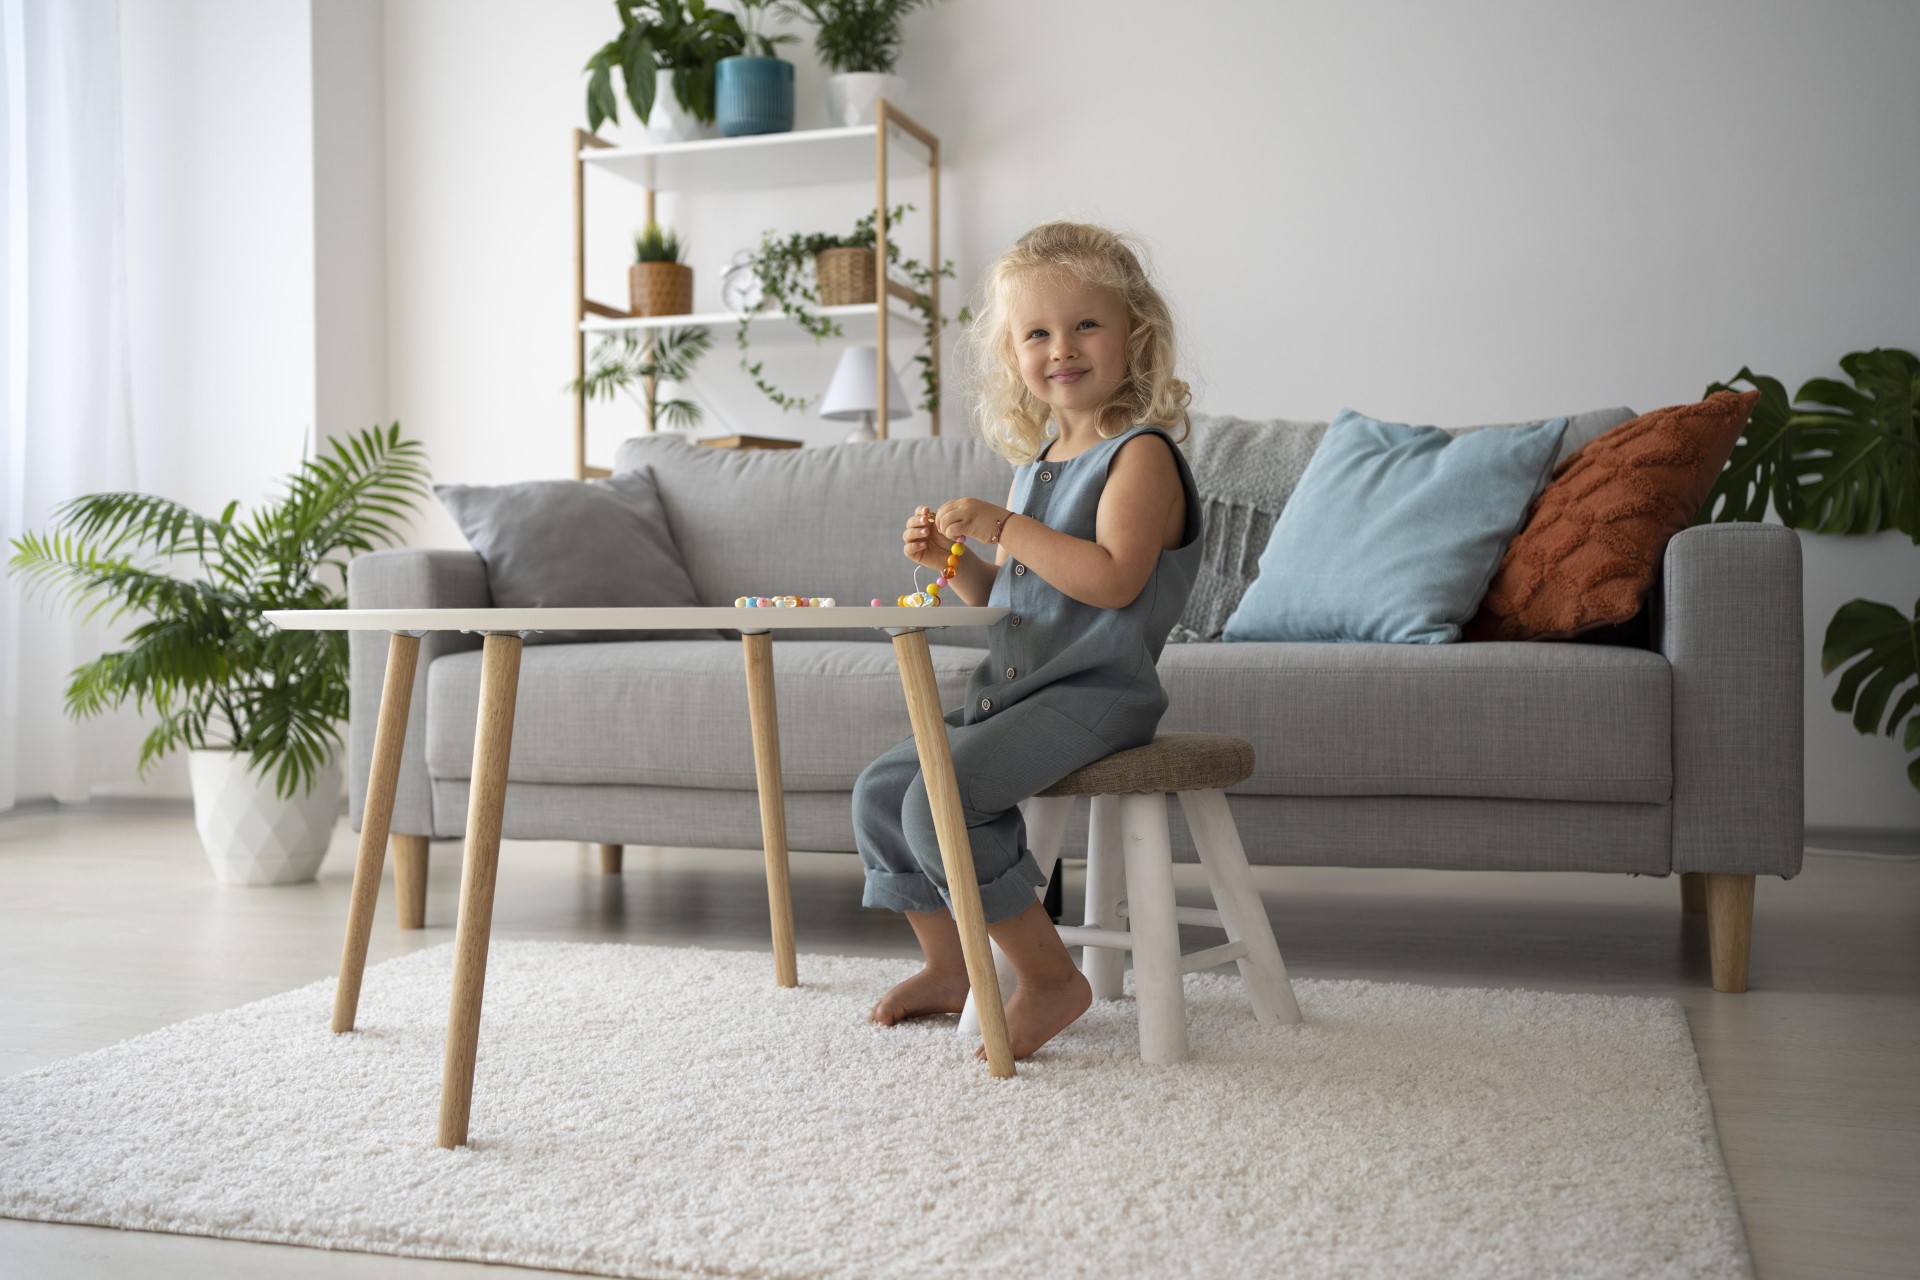 Как выбрать мебель для детской комнаты: безопасность, комфорт и развитие